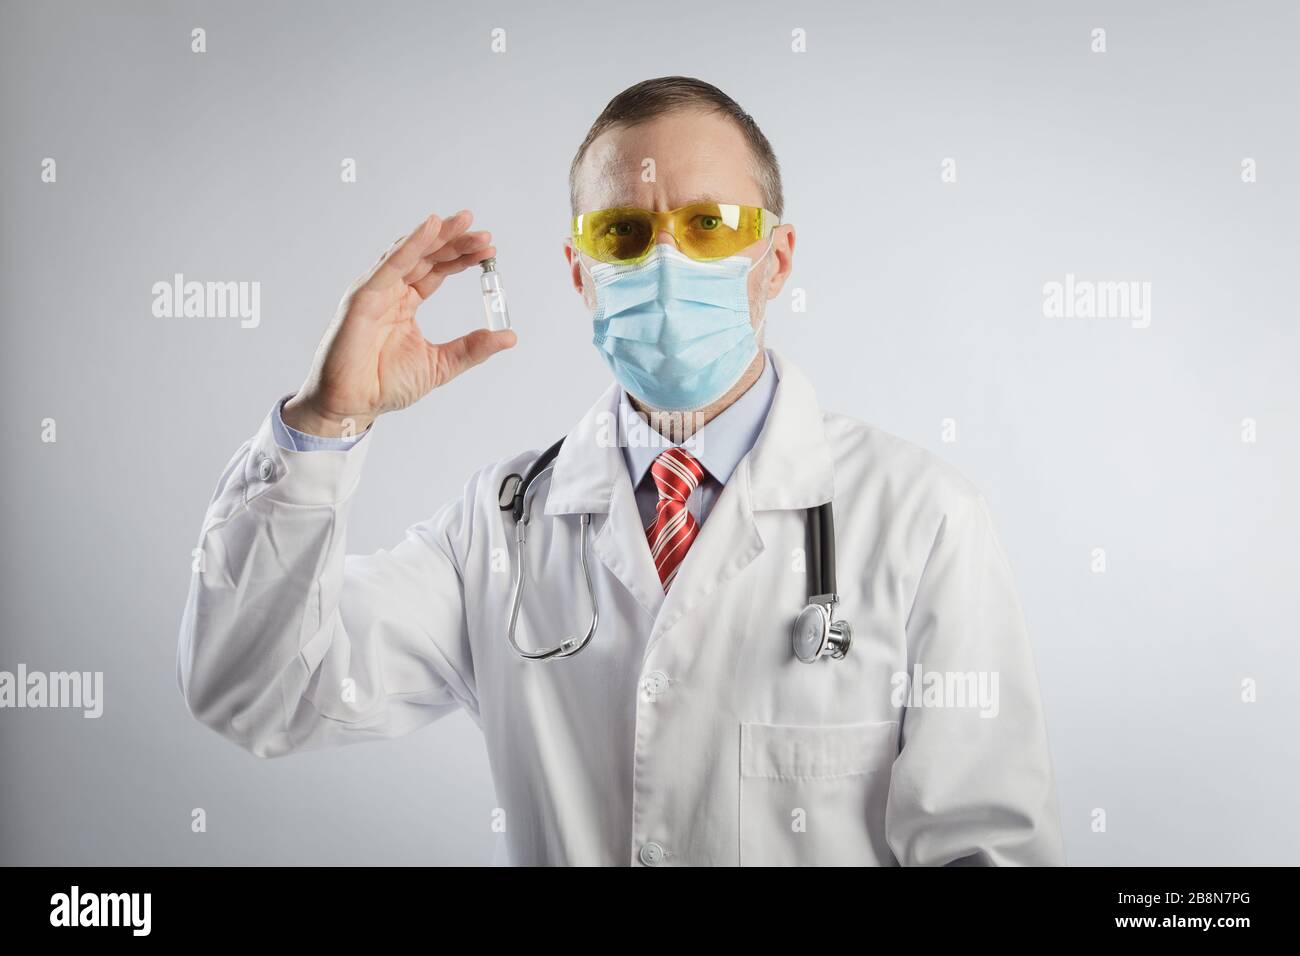 Le médecin montre le vaccin dans une capsule. Spécialiste médical dans une robe médicale, des lunettes et un masque et un stéthoscope sur ses épaules Banque D'Images